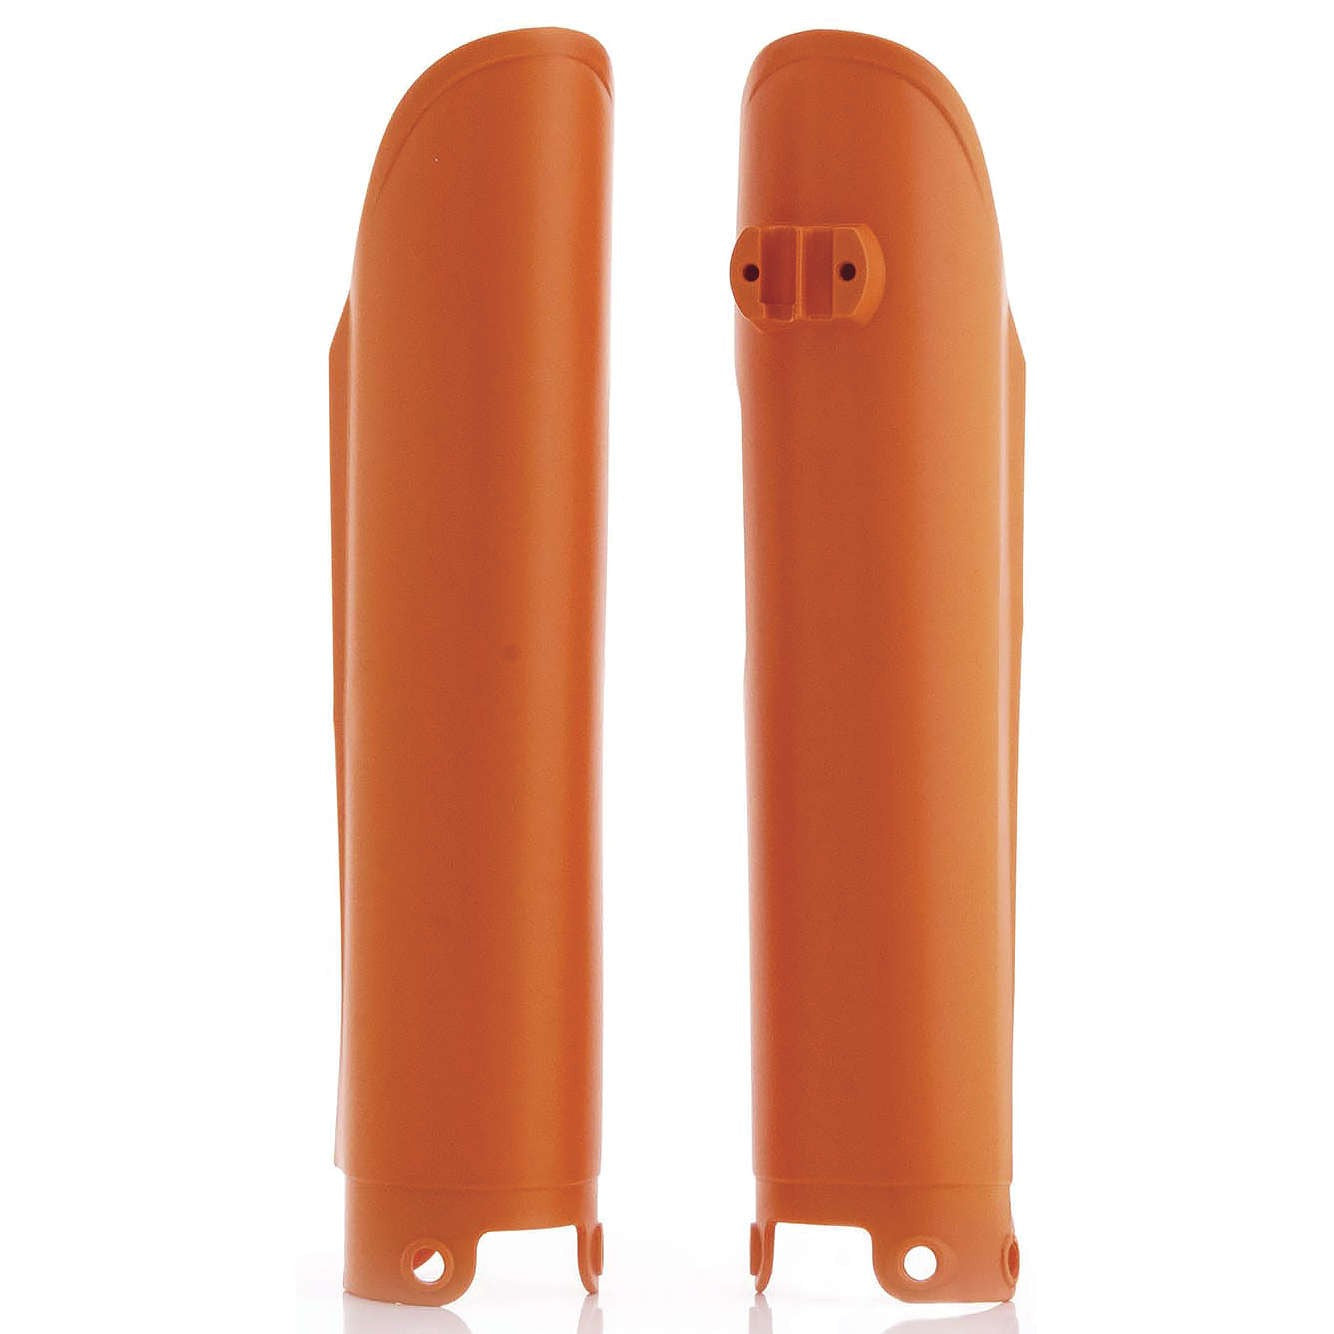 Acerbis Orange Fork Covers for KTM - 2113740237